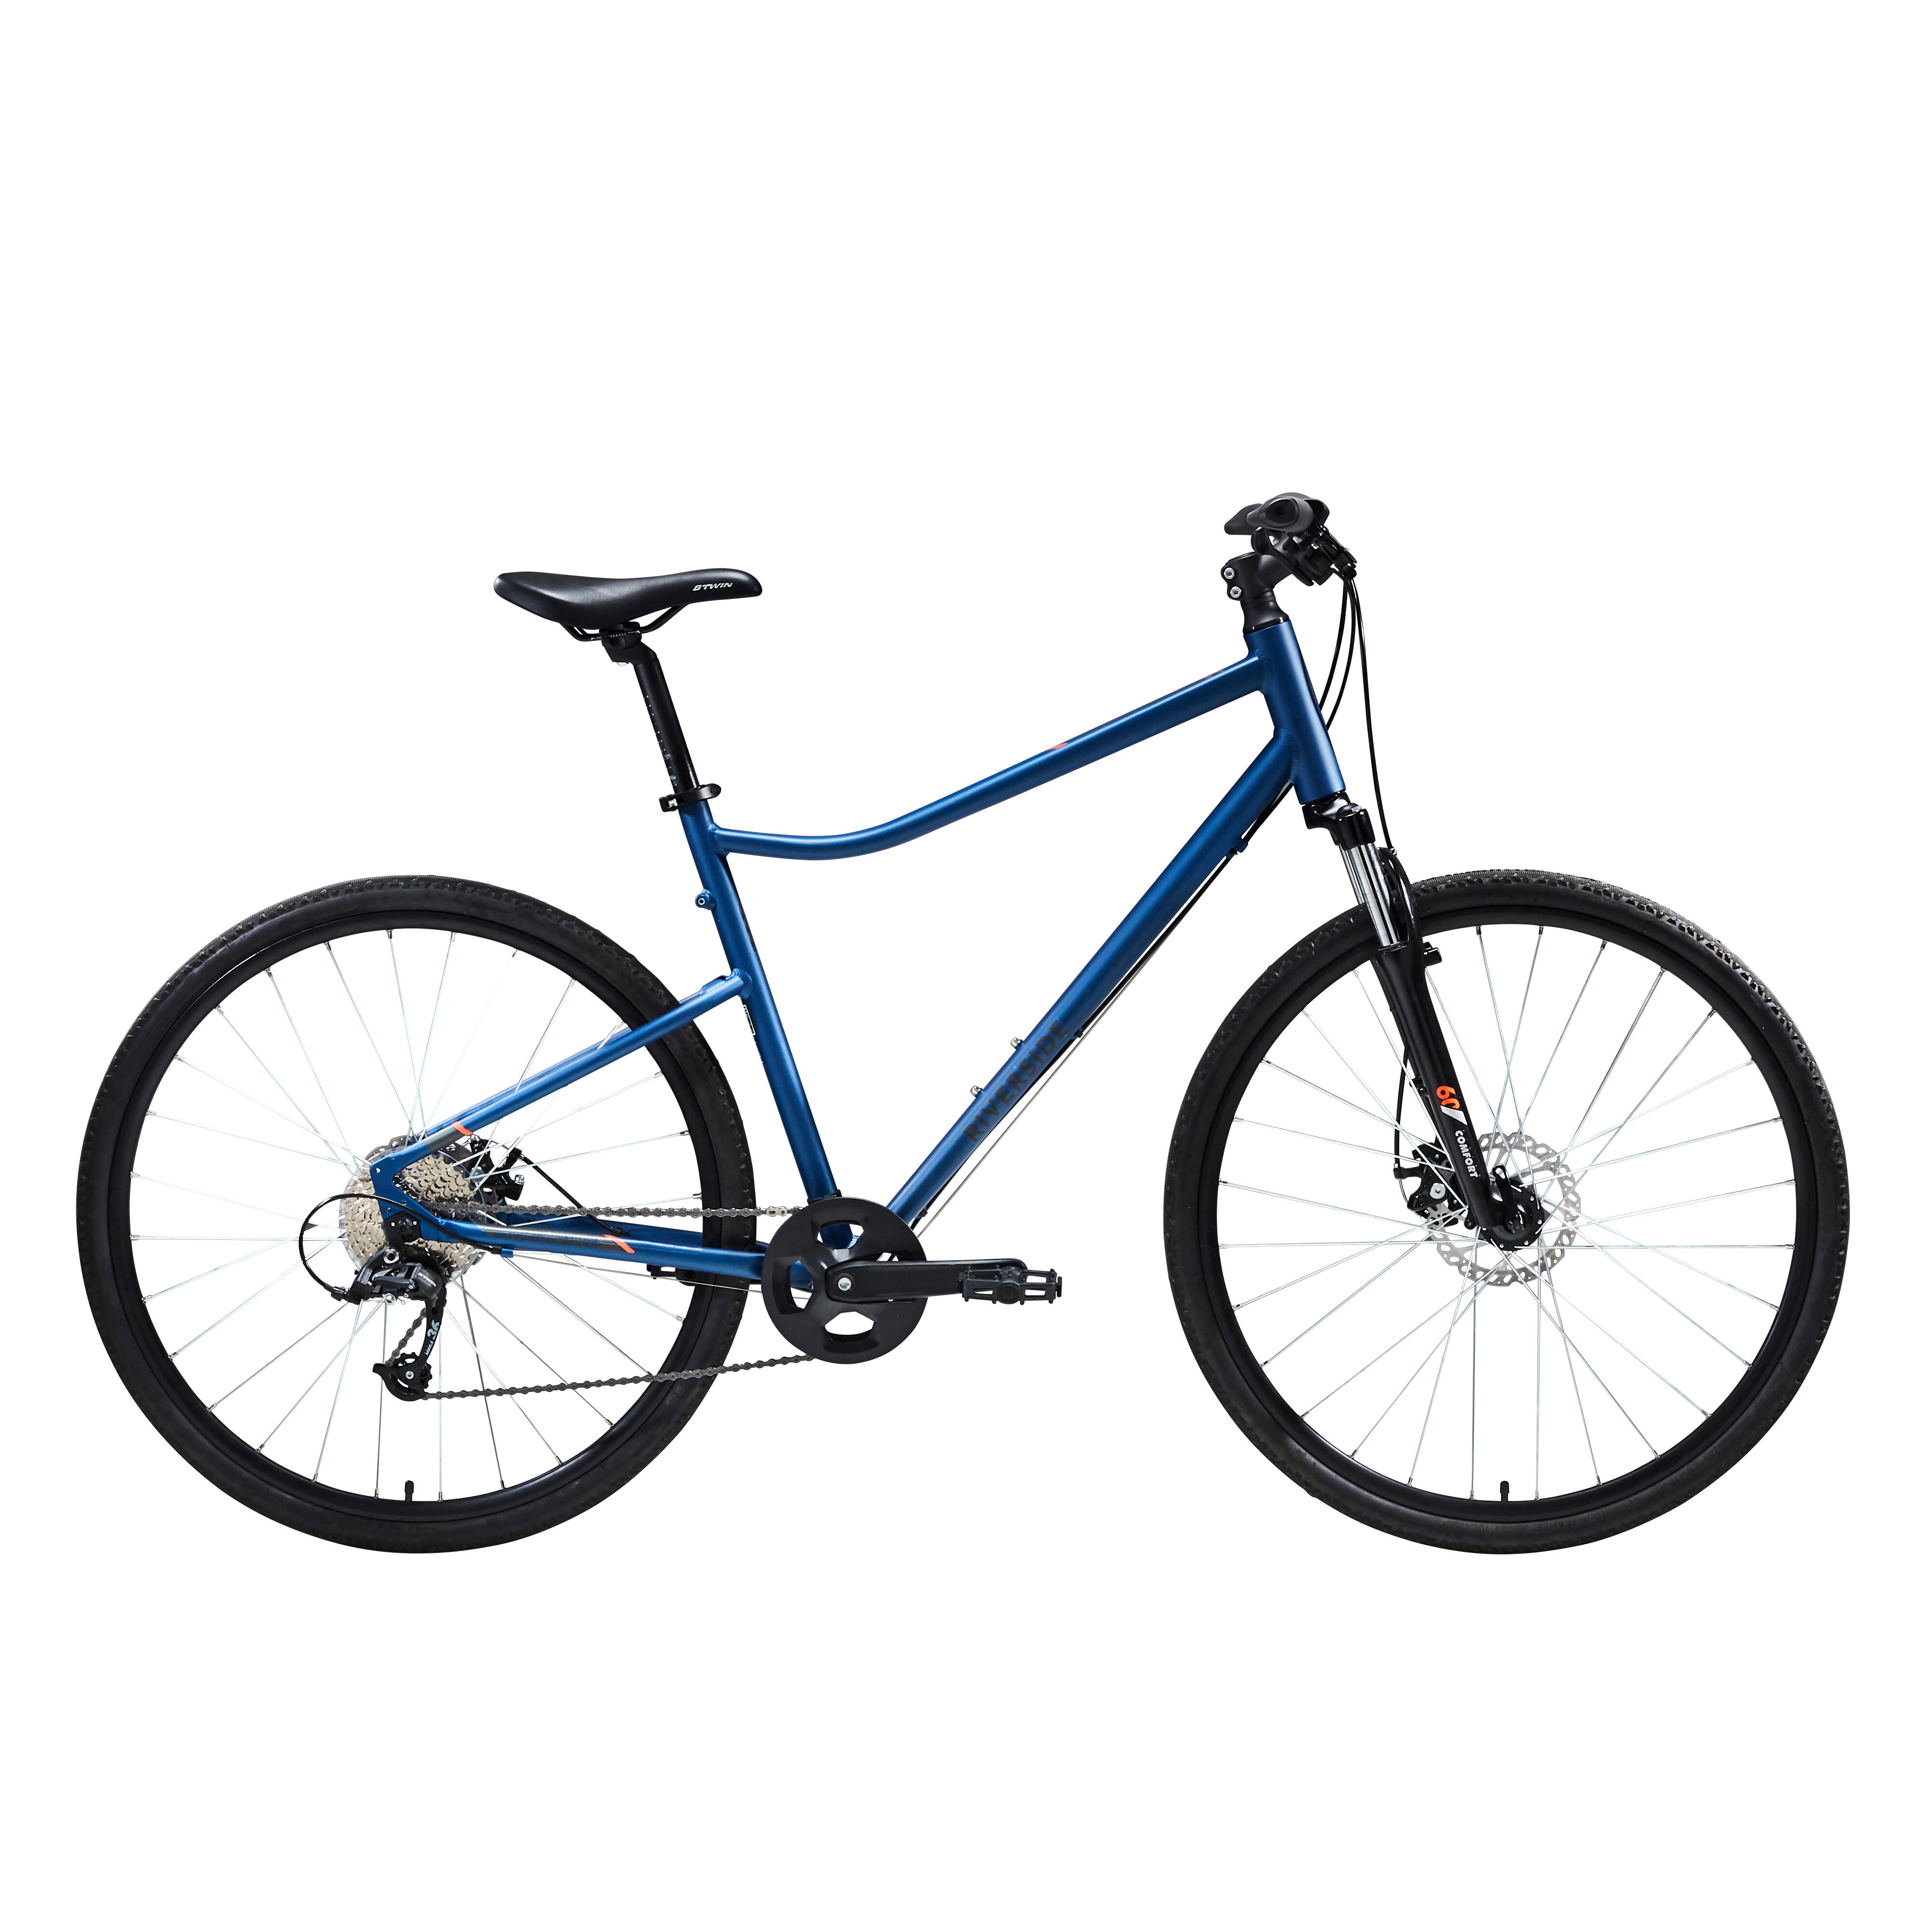 Bicicletă polivalentă Riverside 500 Albastru decathlon.ro Biciclete